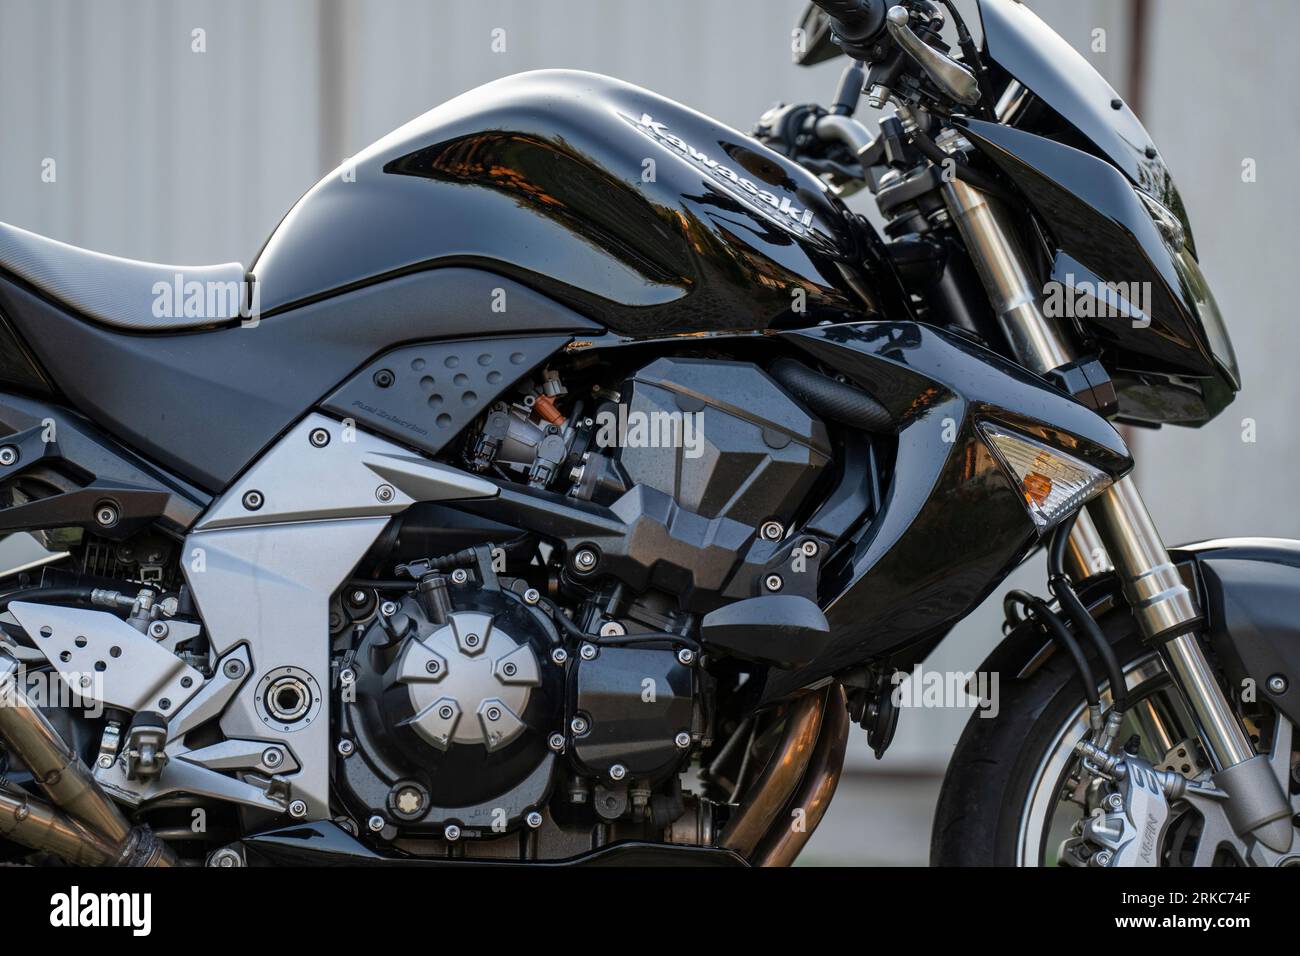 A Kawasaki Z1000 motorcycle, close up selective focus Stock Photo - Alamy